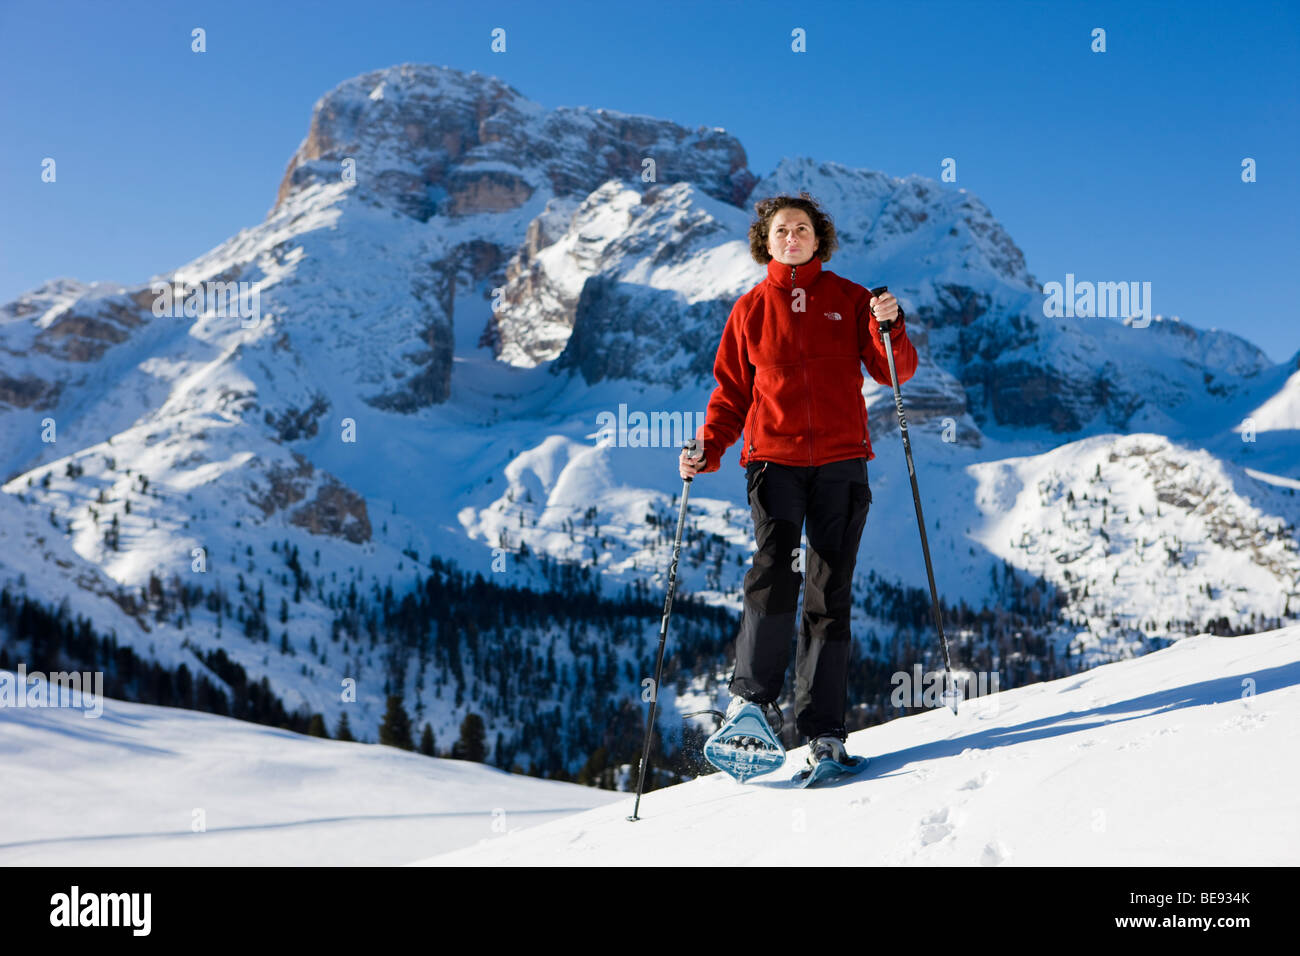 Donna con le racchette da neve, nel retro della Hohe Gaisl montagna, Plaetzwiese altopiano, Dolomiti, Alto Adige, Italia, Europa Foto Stock